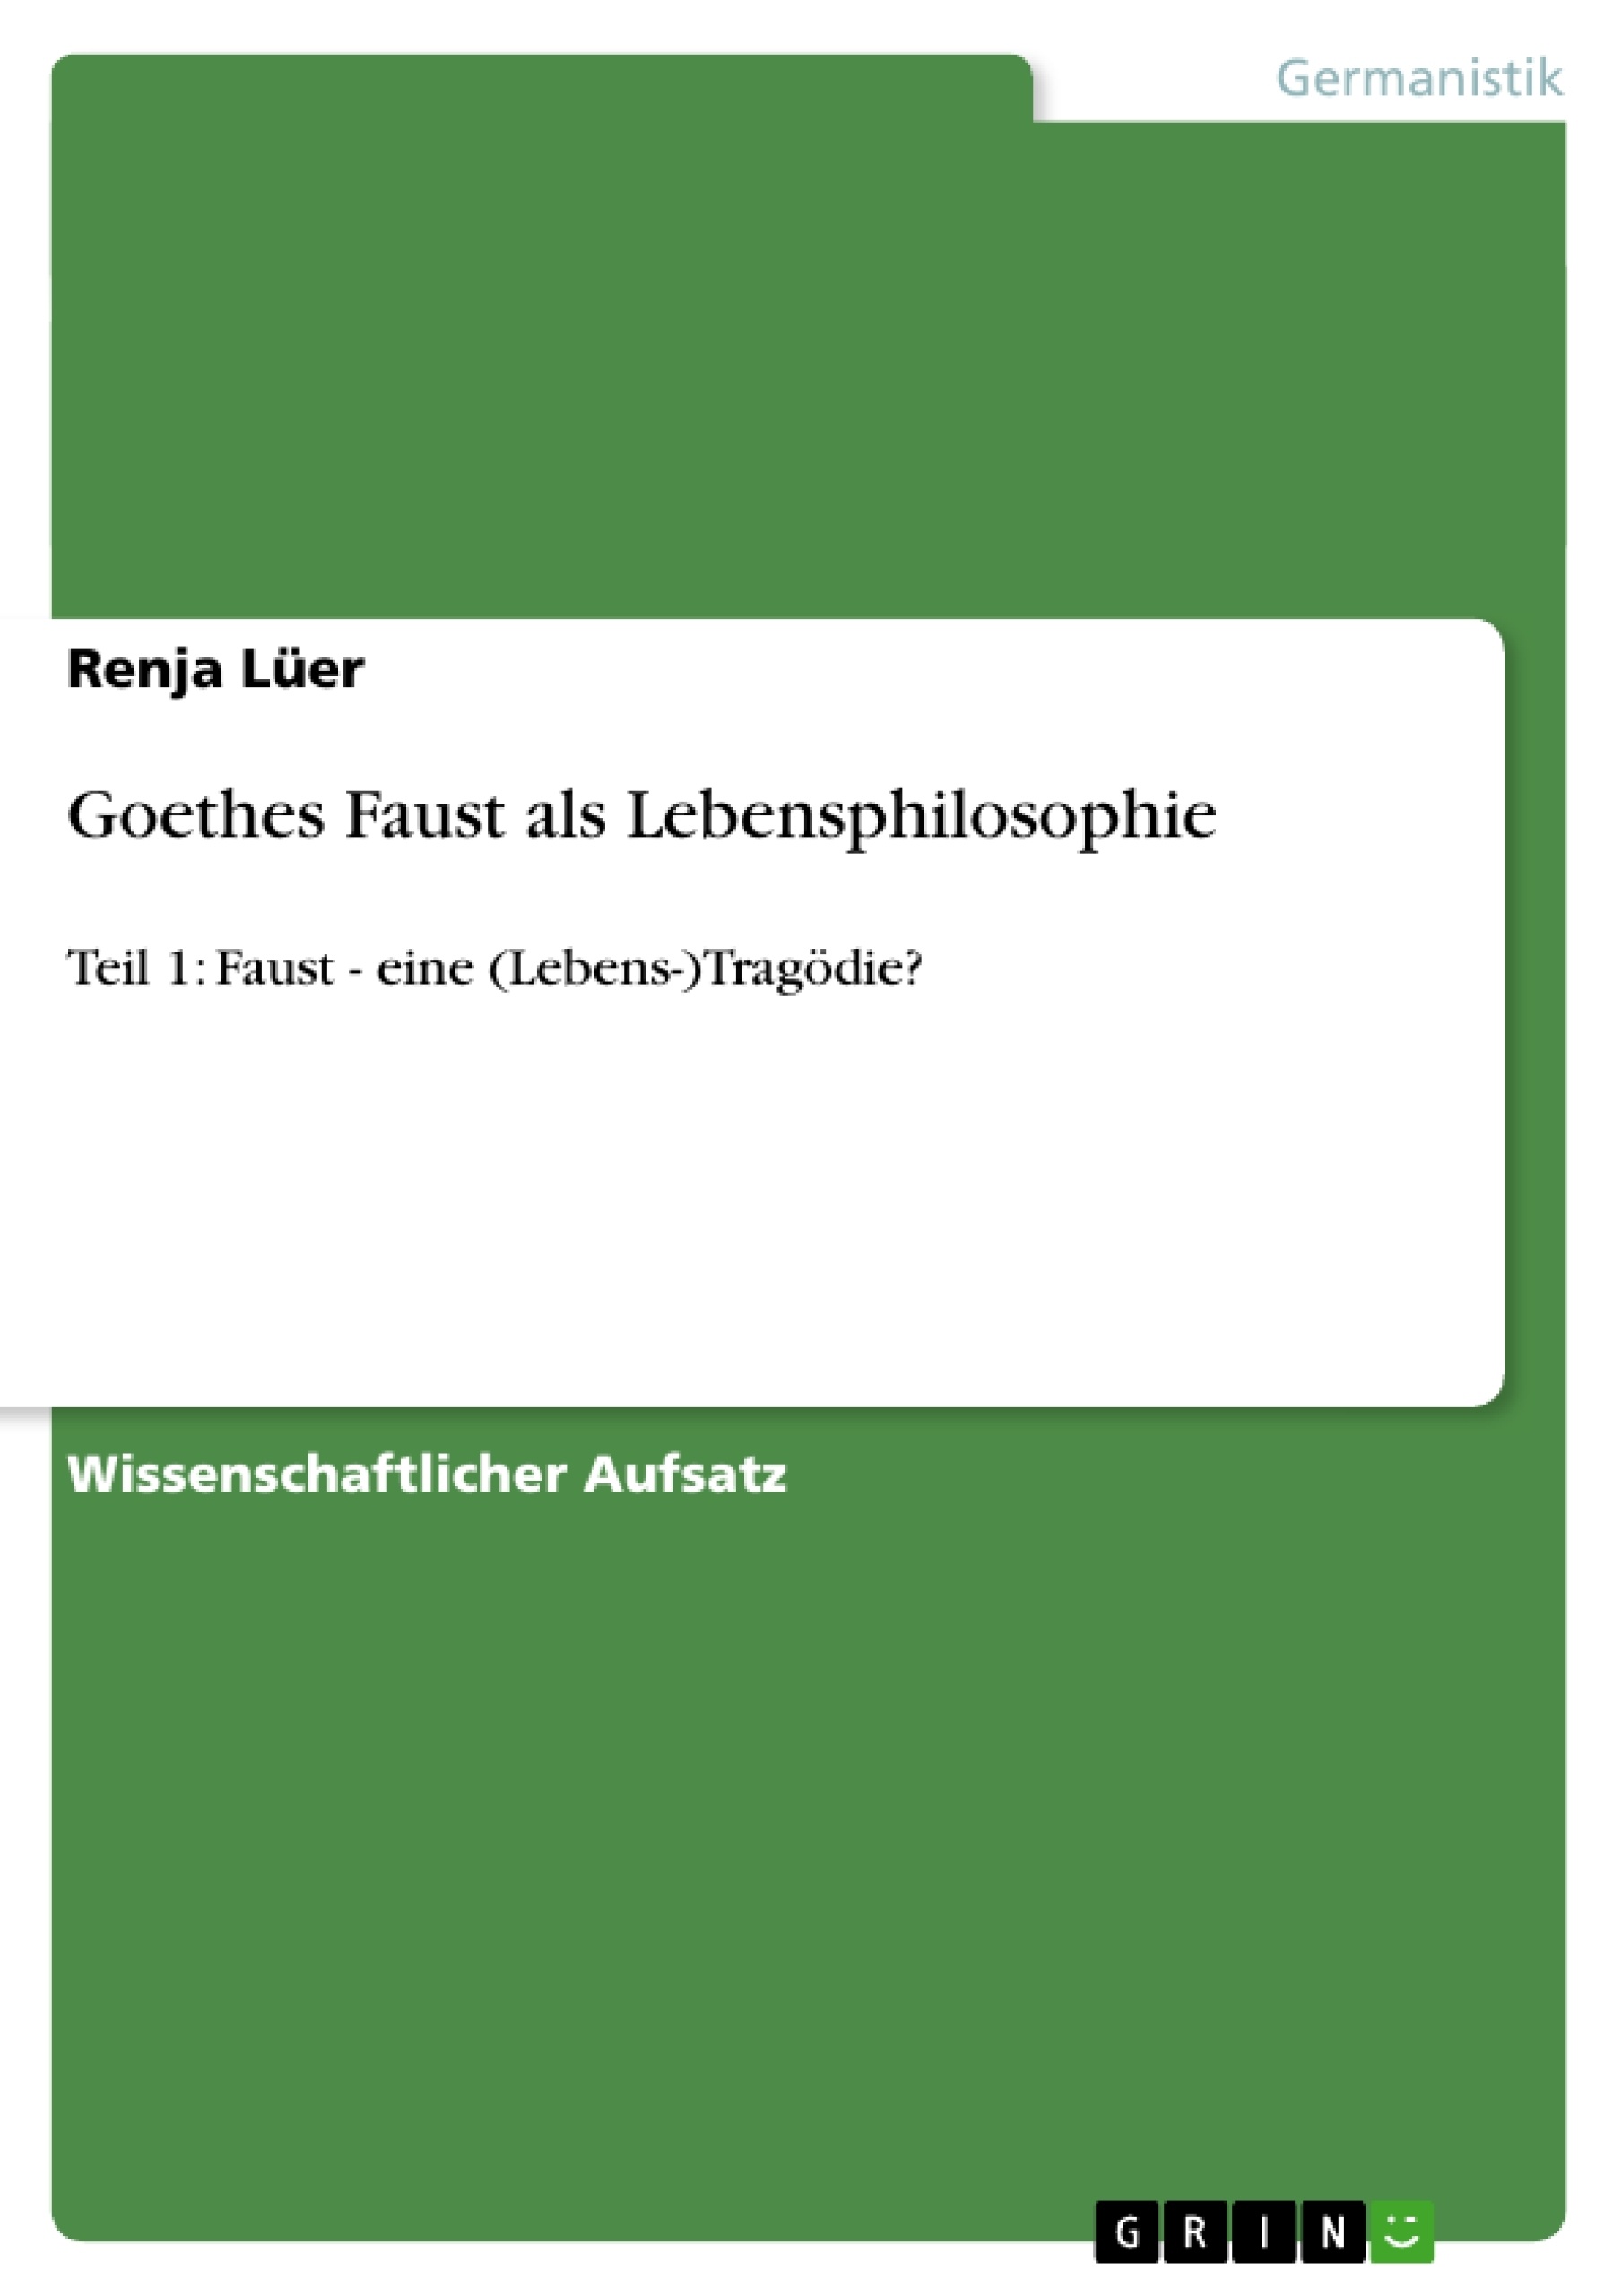 Title: Goethes Faust als Lebensphilosophie